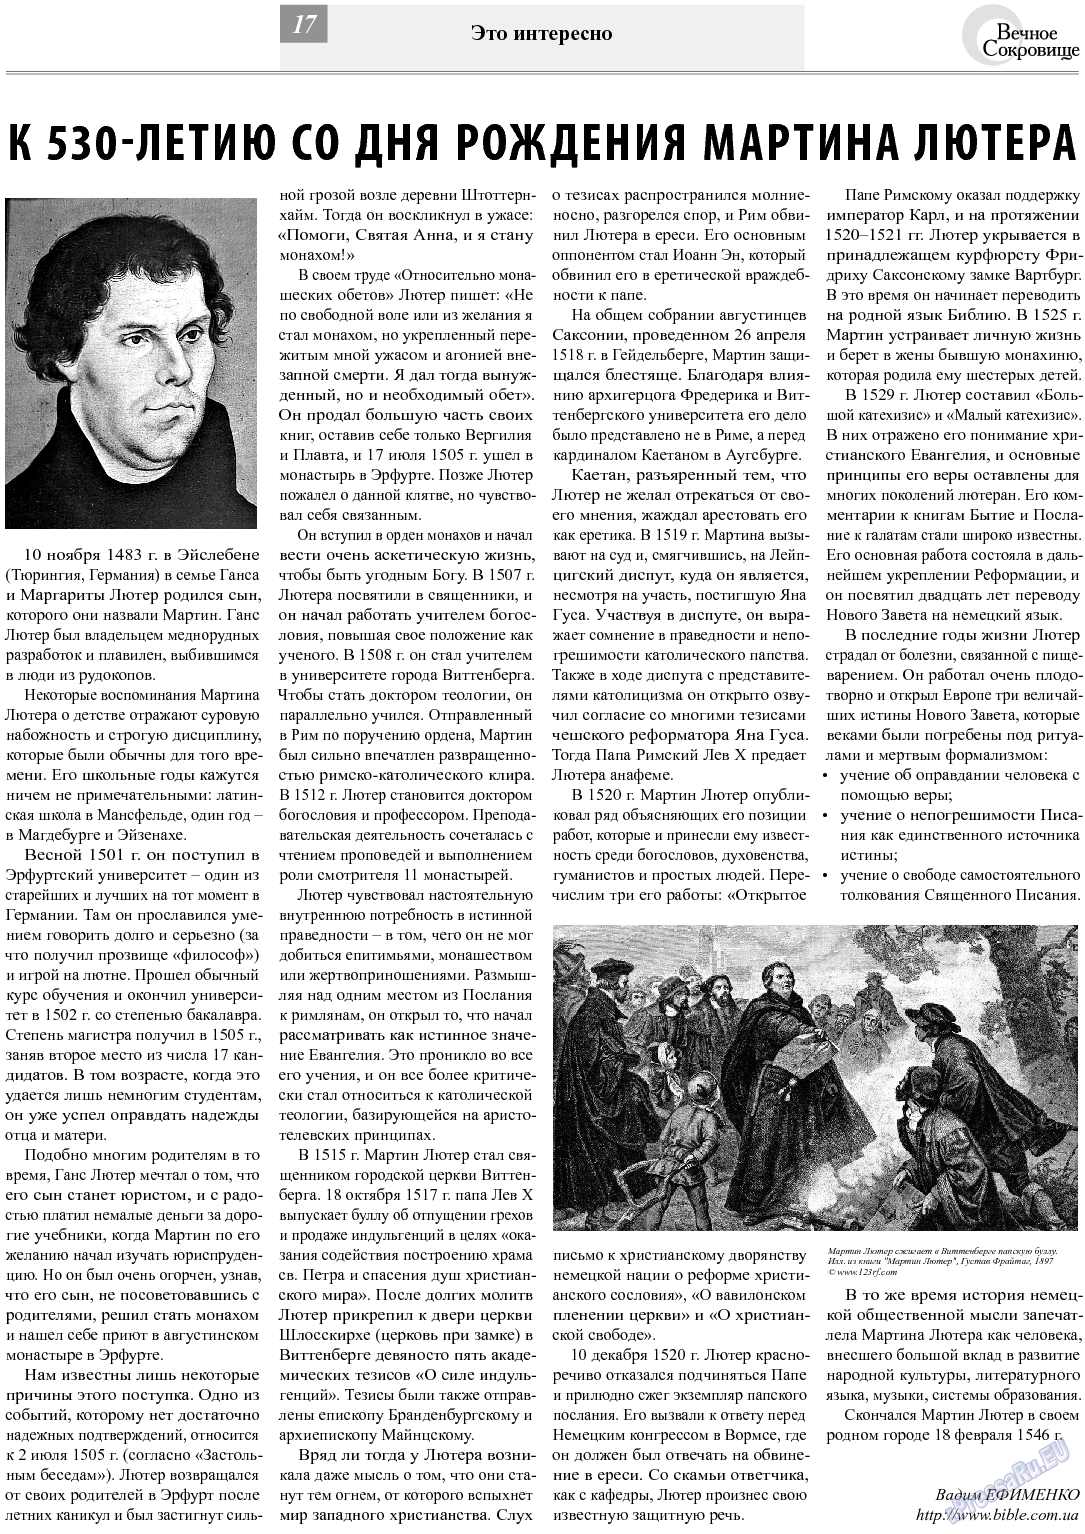 Вечное сокровище, газета. 2013 №6 стр.17